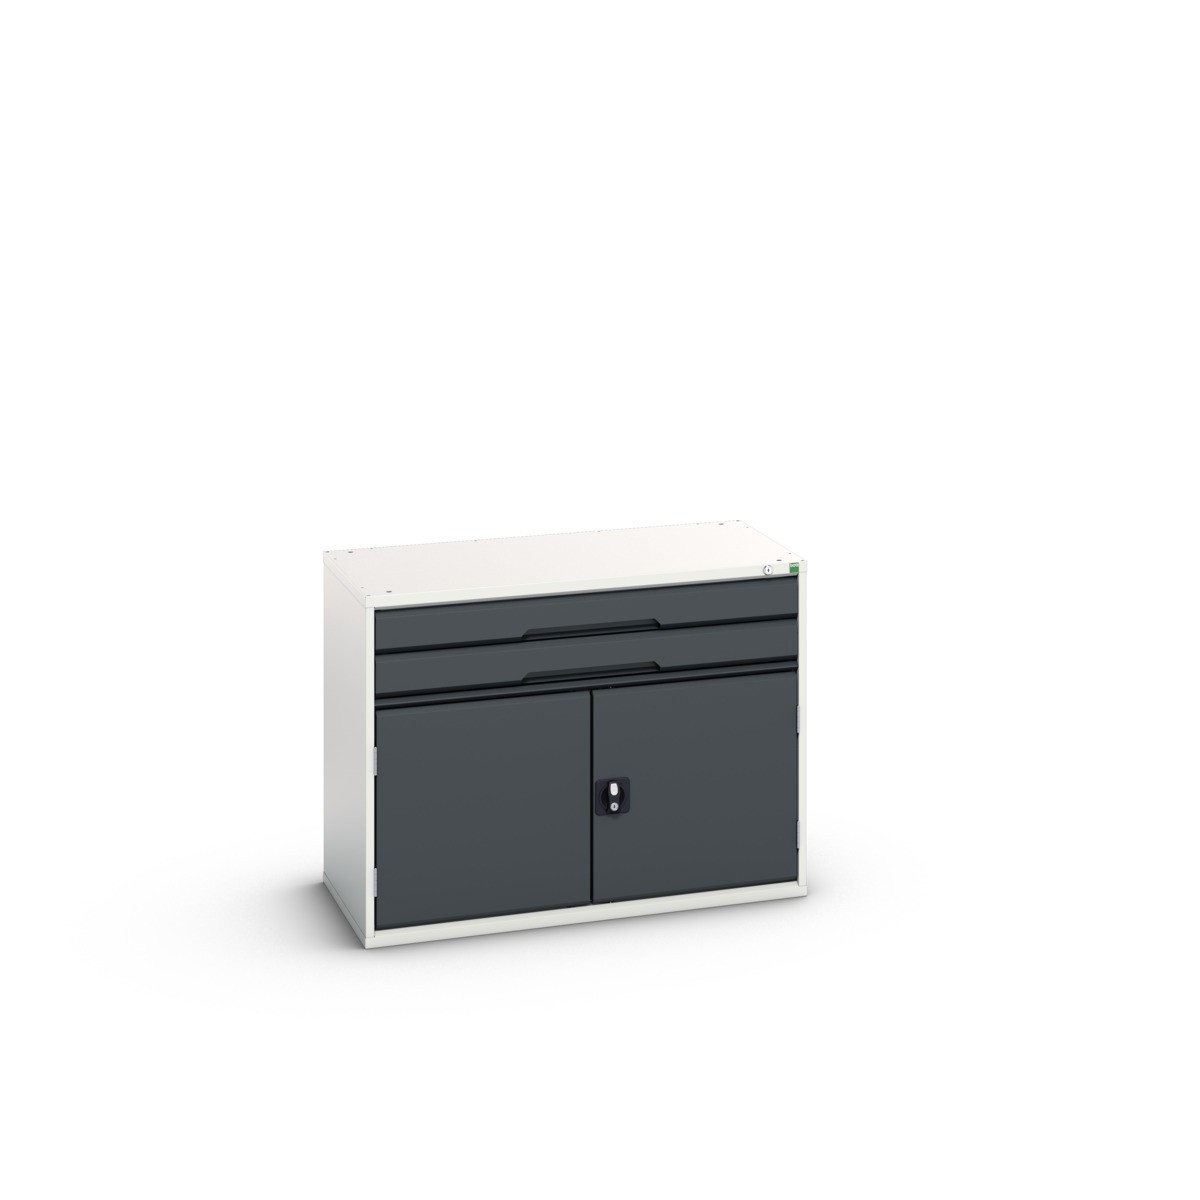 16925216.19 - verso drawer-door cabinet